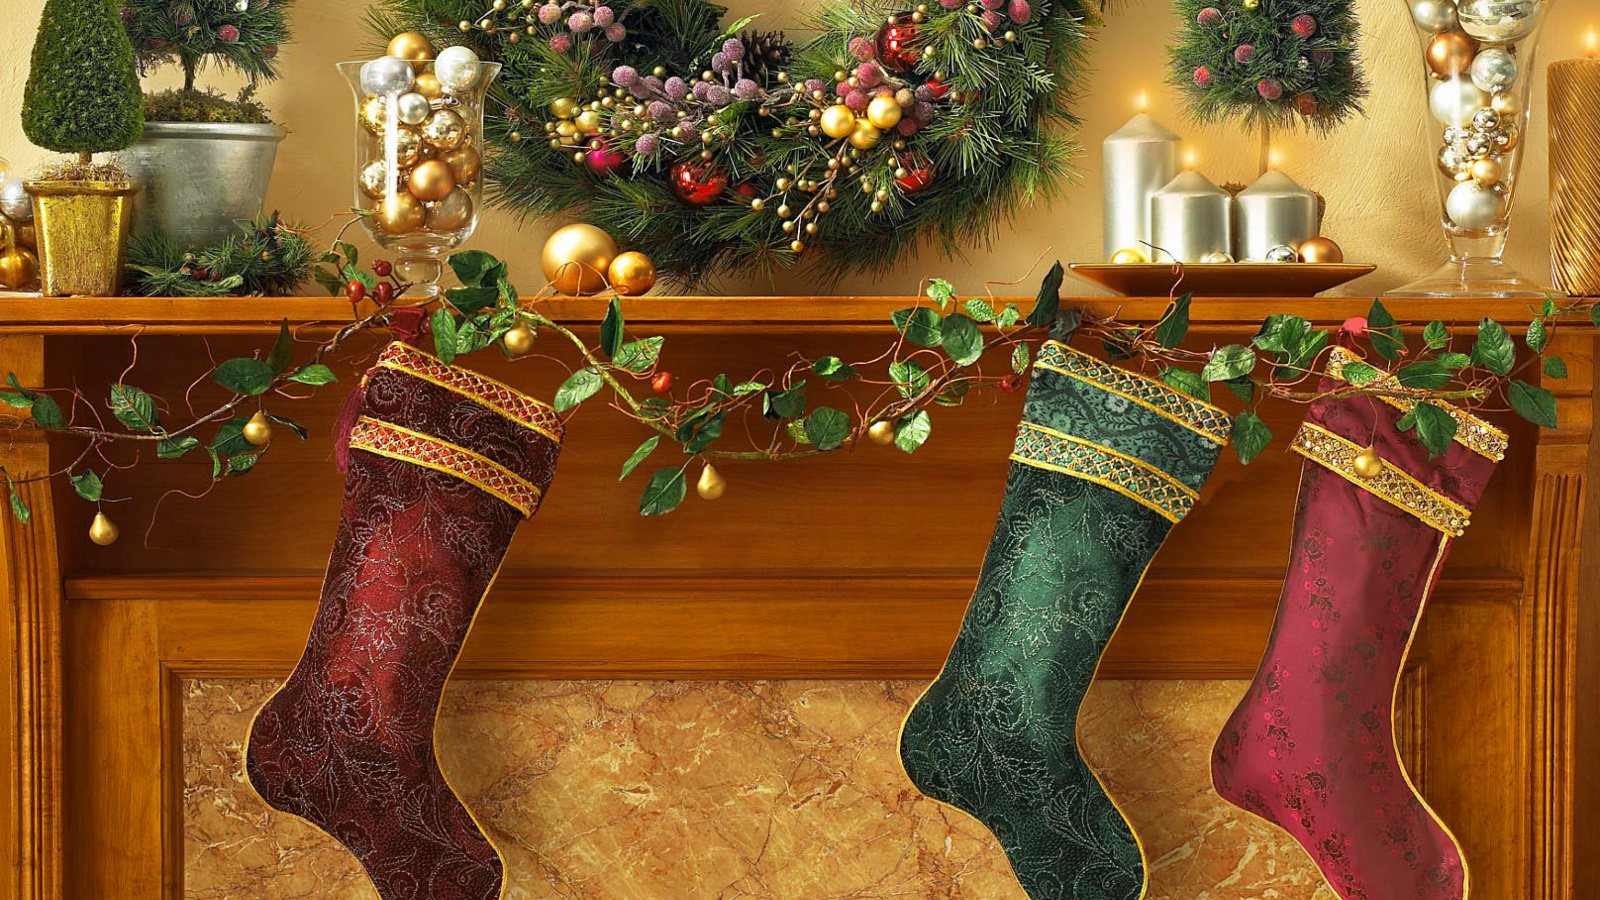 Sfondi Christmas stocking on fireplace 1600x900